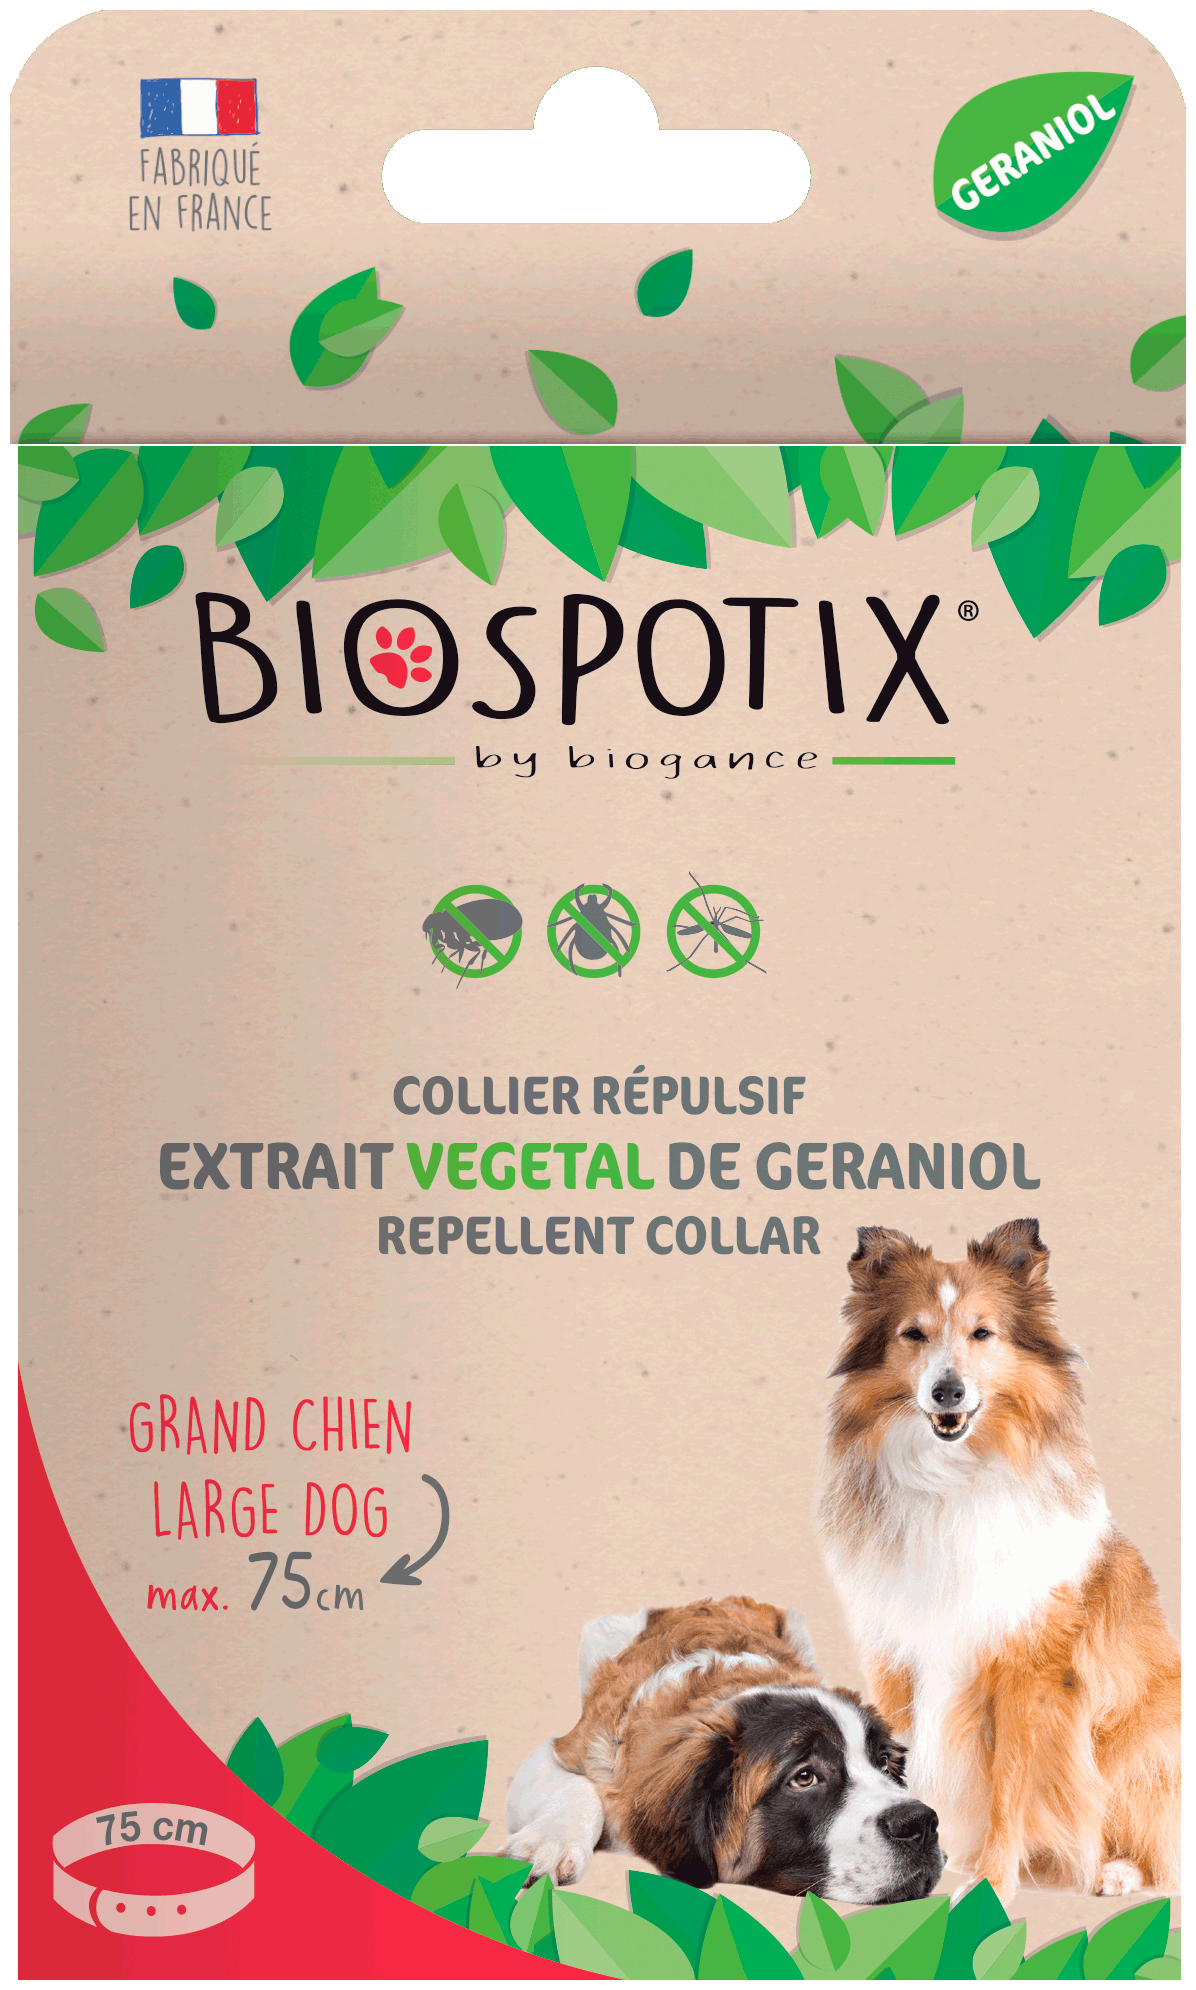 Biogance Biospotix 狗项圈最长 75 厘米 - Chrysdietética